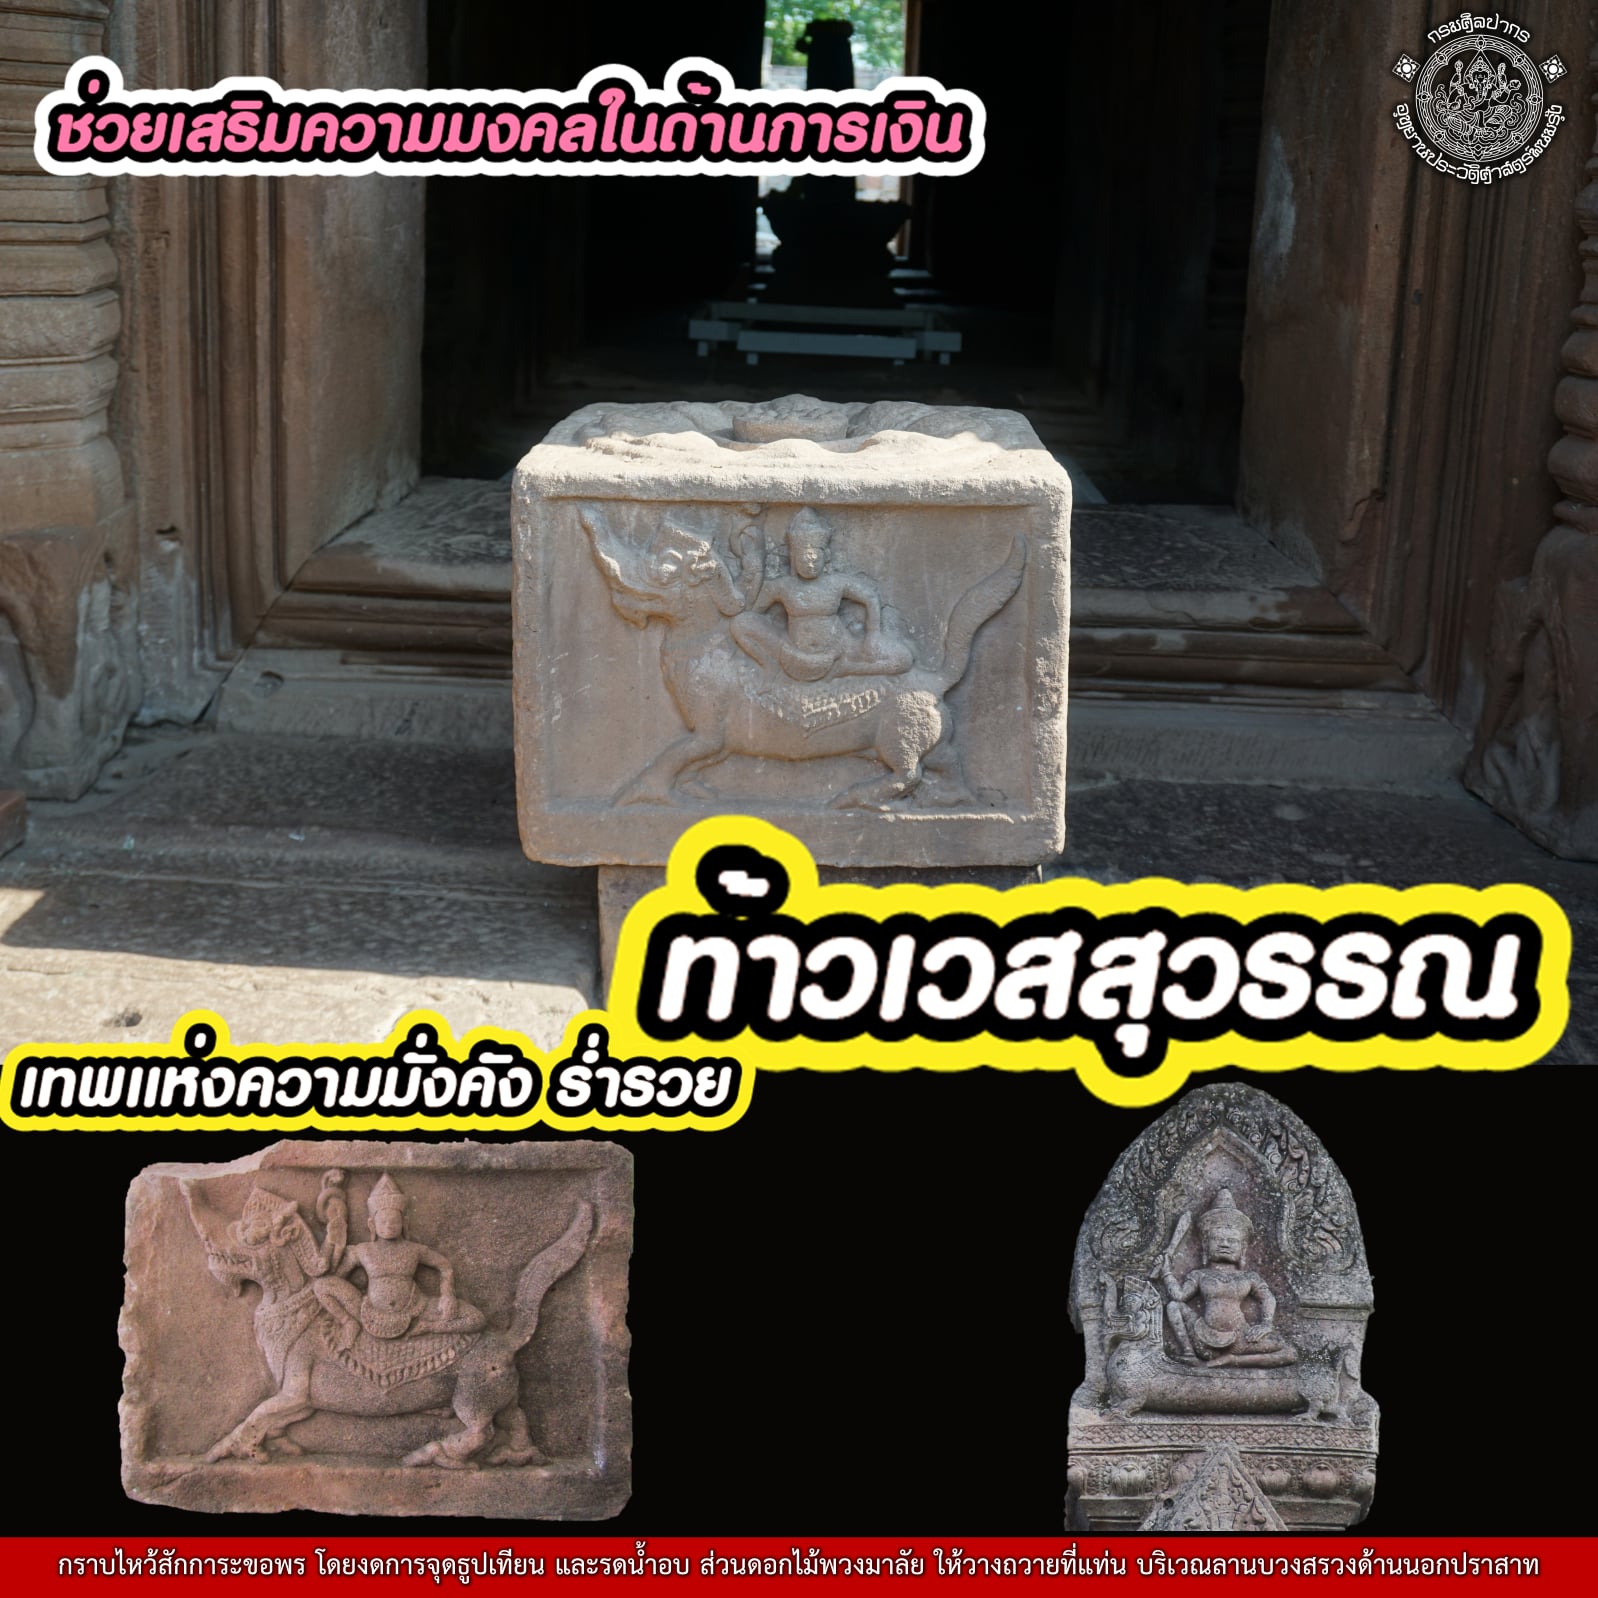 ปีใหม่ไทยสักการะสิ่งศักดิ์สิทธิ์ ณ ปราสาทพนมรุ้ง